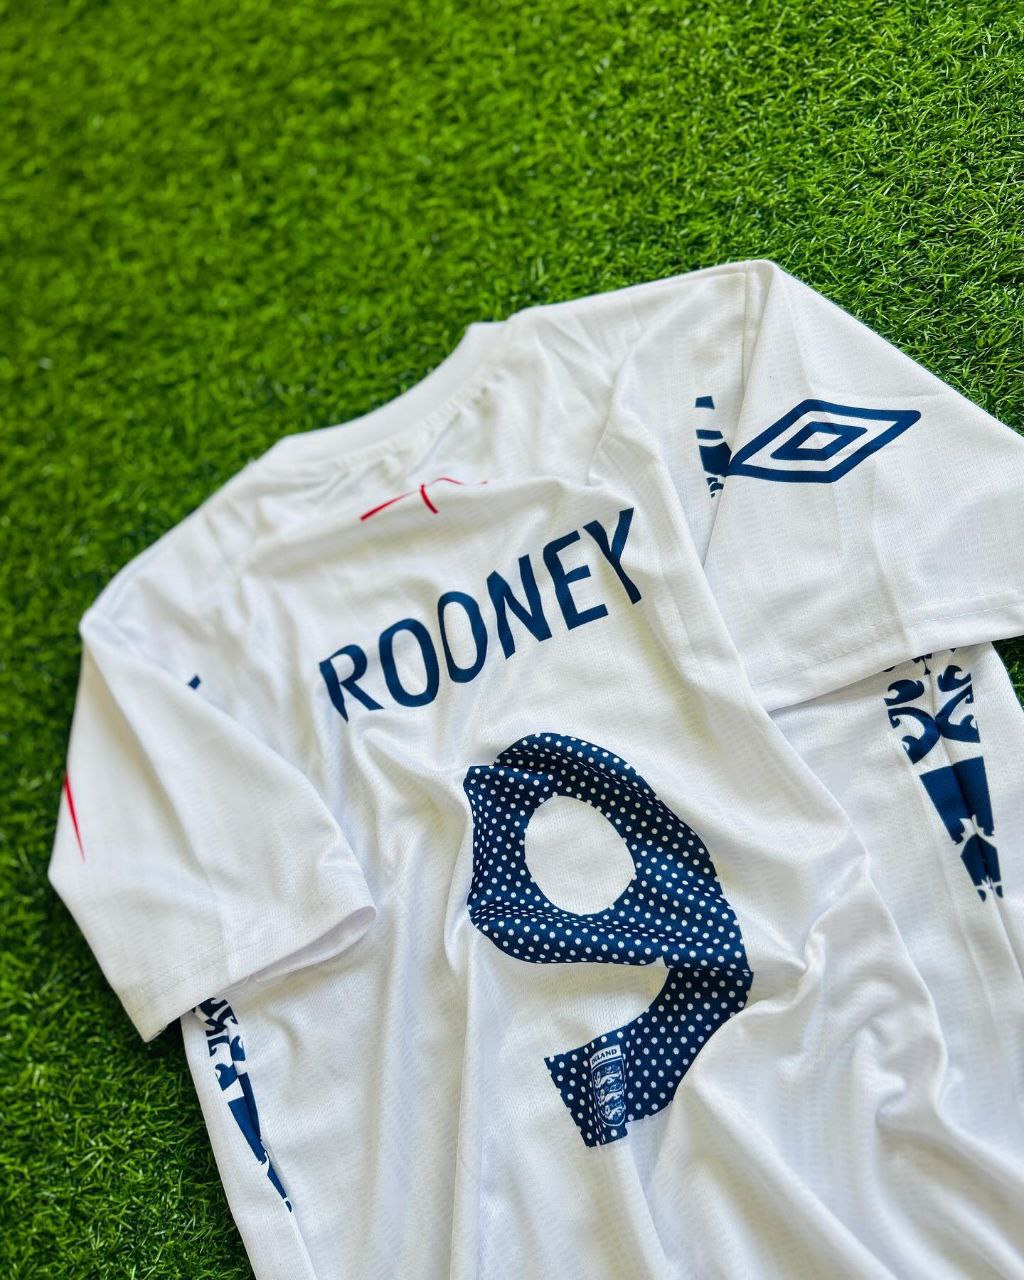 Wayne Rooney 2007–09 England-Retrotrikot in Weiß